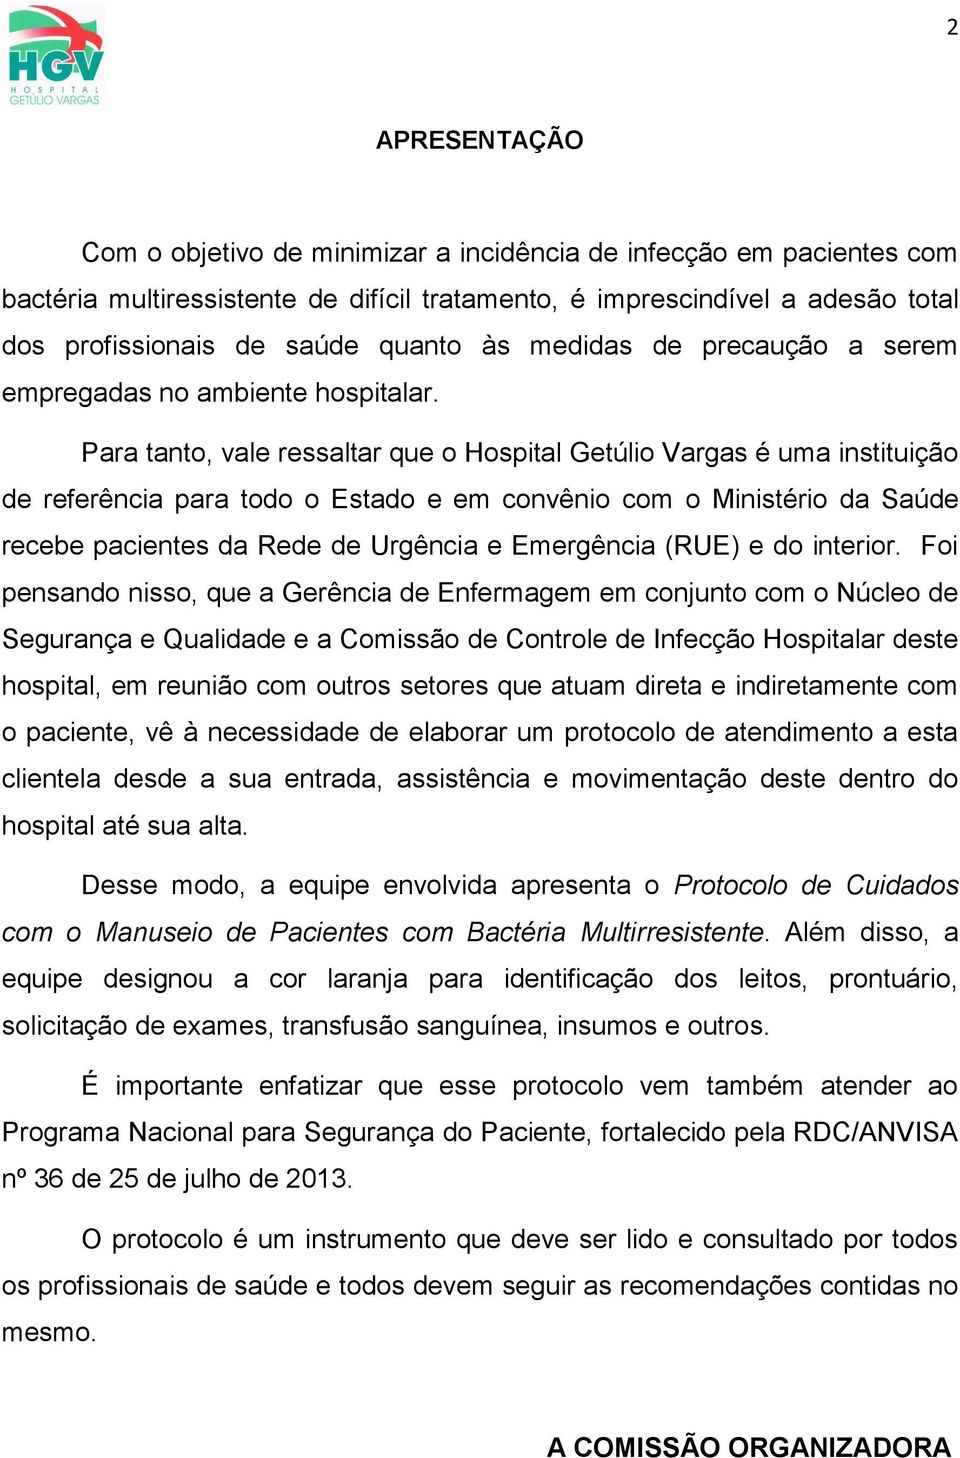 Para tanto, vale ressaltar que o Hospital Getúlio Vargas é uma instituição de referência para todo o Estado e em convênio com o Ministério da Saúde recebe pacientes da Rede de Urgência e Emergência